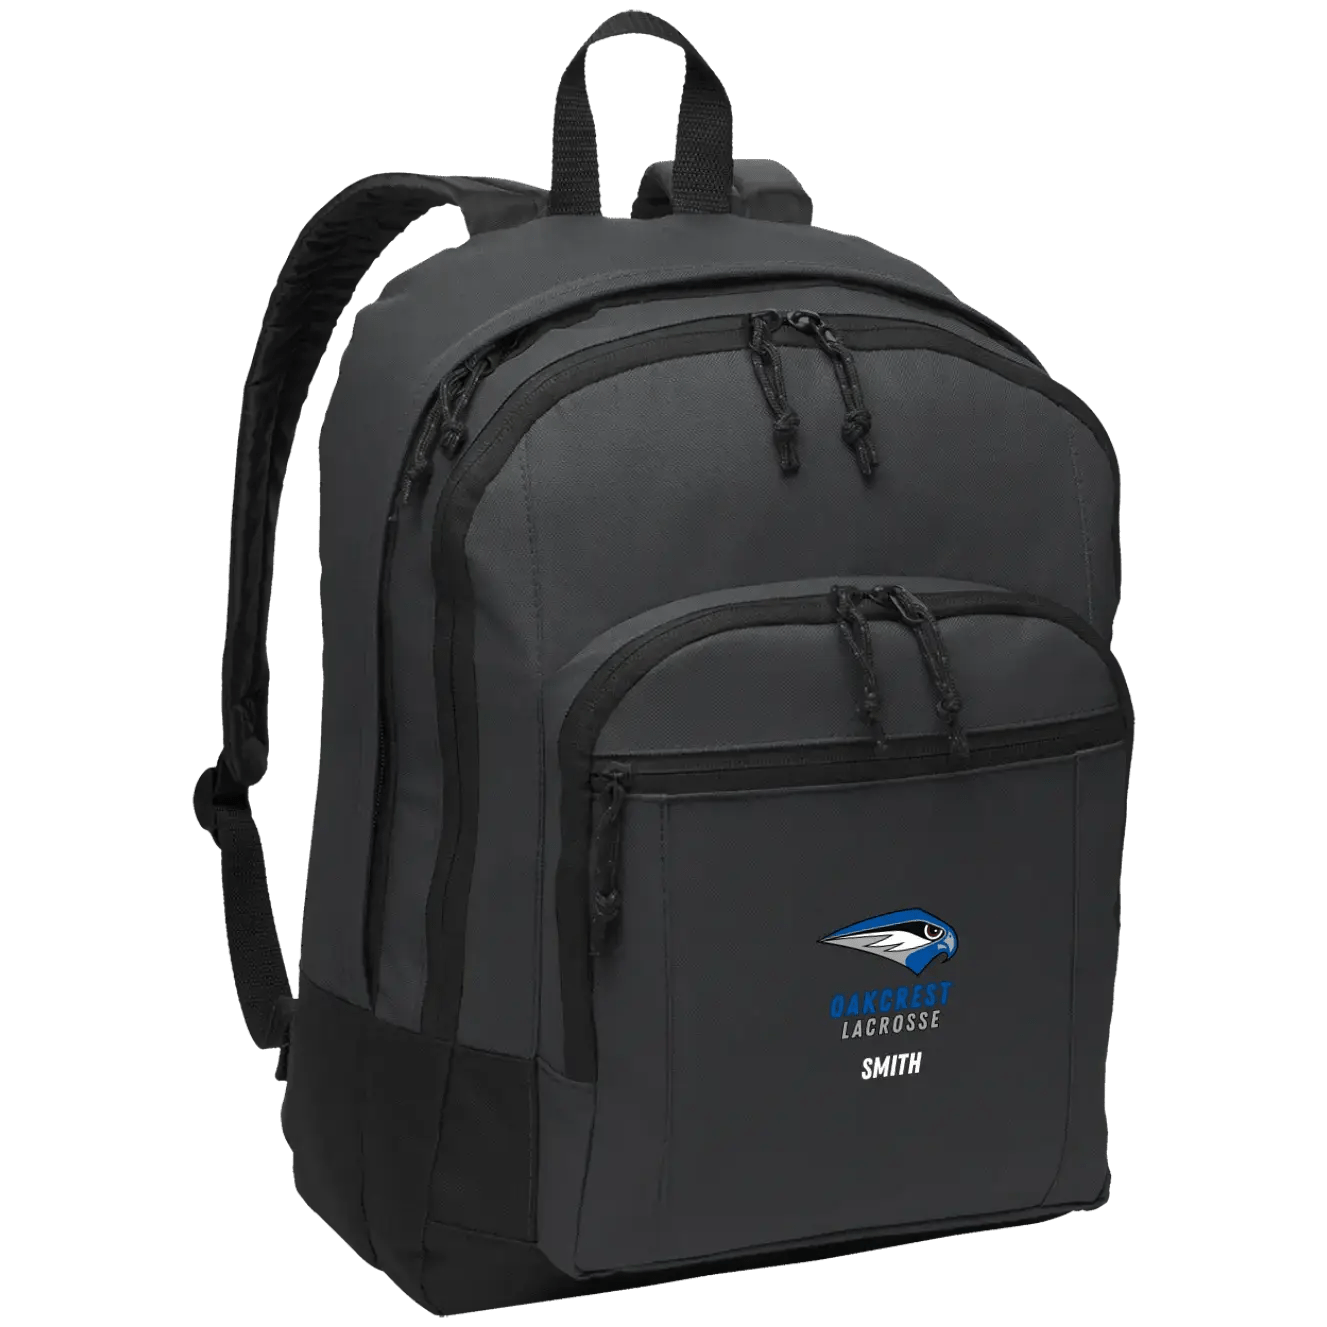 OHS LAX Bags - Shore Break Designs - Customizer